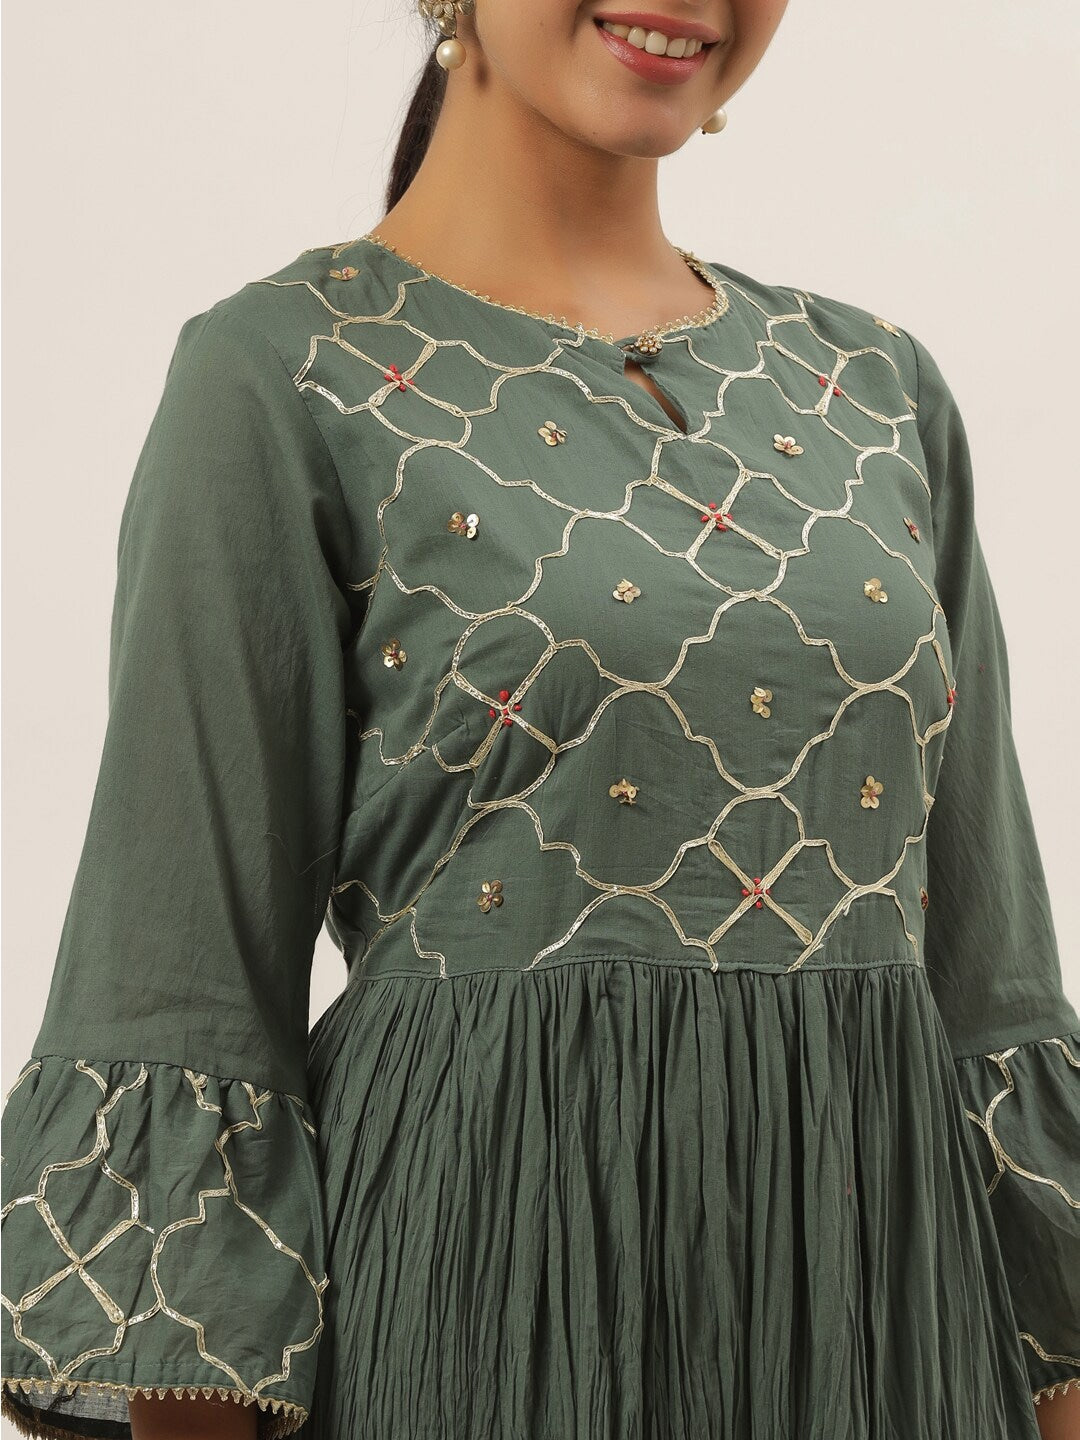 Grey Ethnic Maxi Dress-Yufta Store-6006DRSGYM